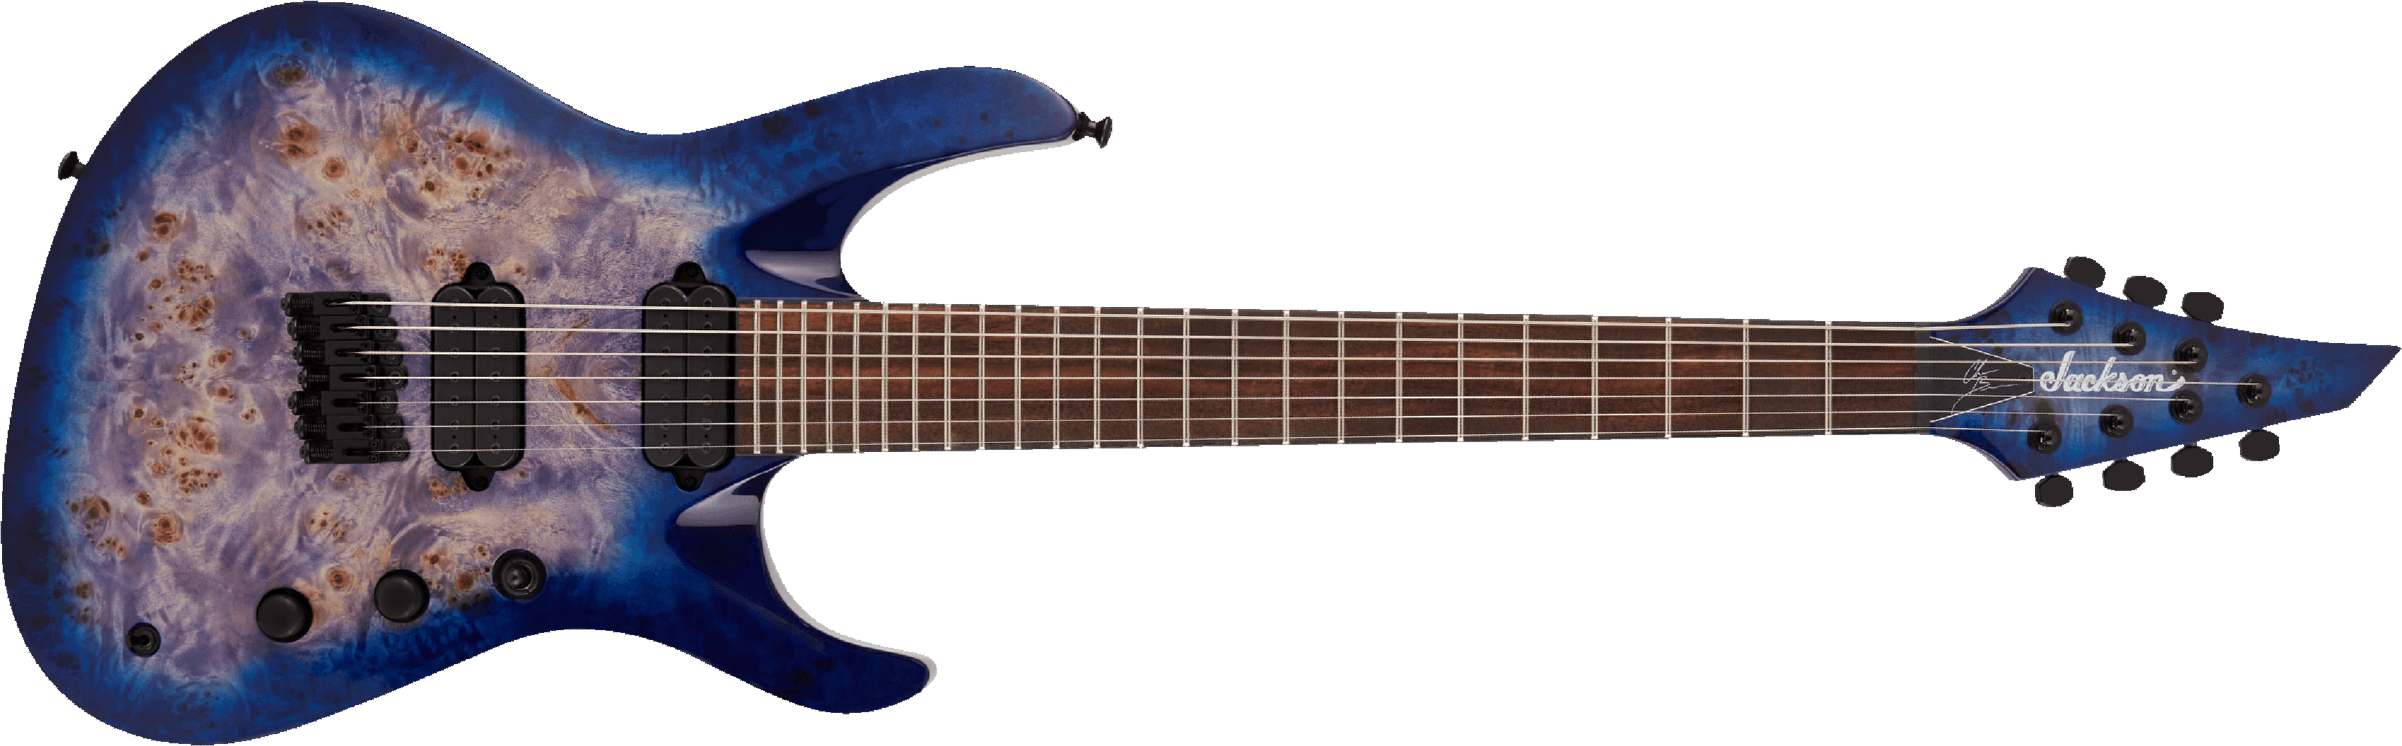 Jackson Chris Broderick Soloist 7 Pro 2h Dimarzio Ht Lau - Trans Blue Poplar - 7 string electric guitar - Main picture